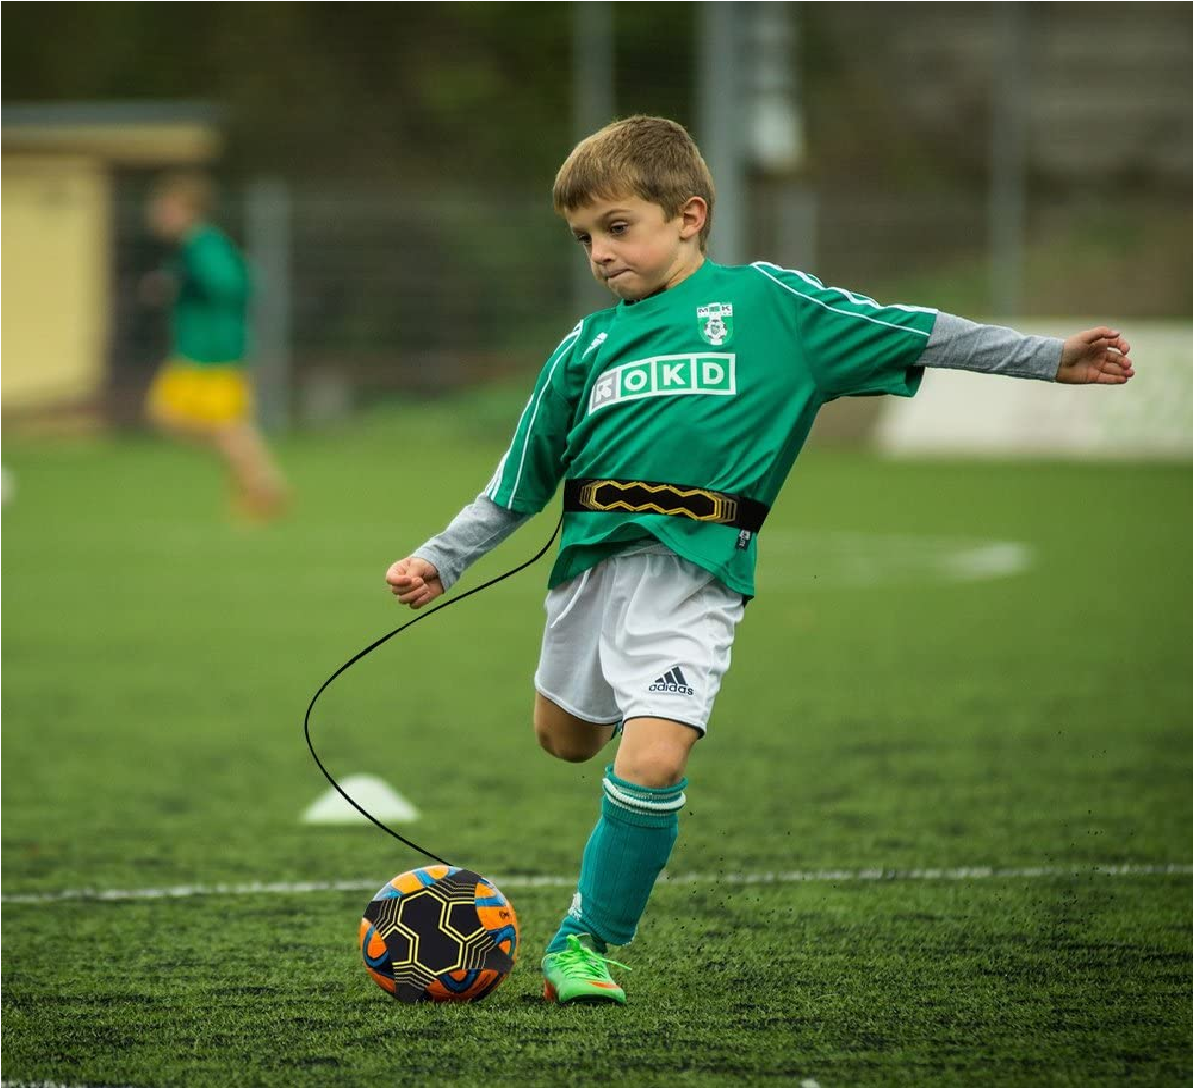 Kick -Trainer  Soccer Practice Training mit verstellbarem Taillengürtel Hilfe Kontrolle Fertigkeit Fußballtraining Training für Kinder